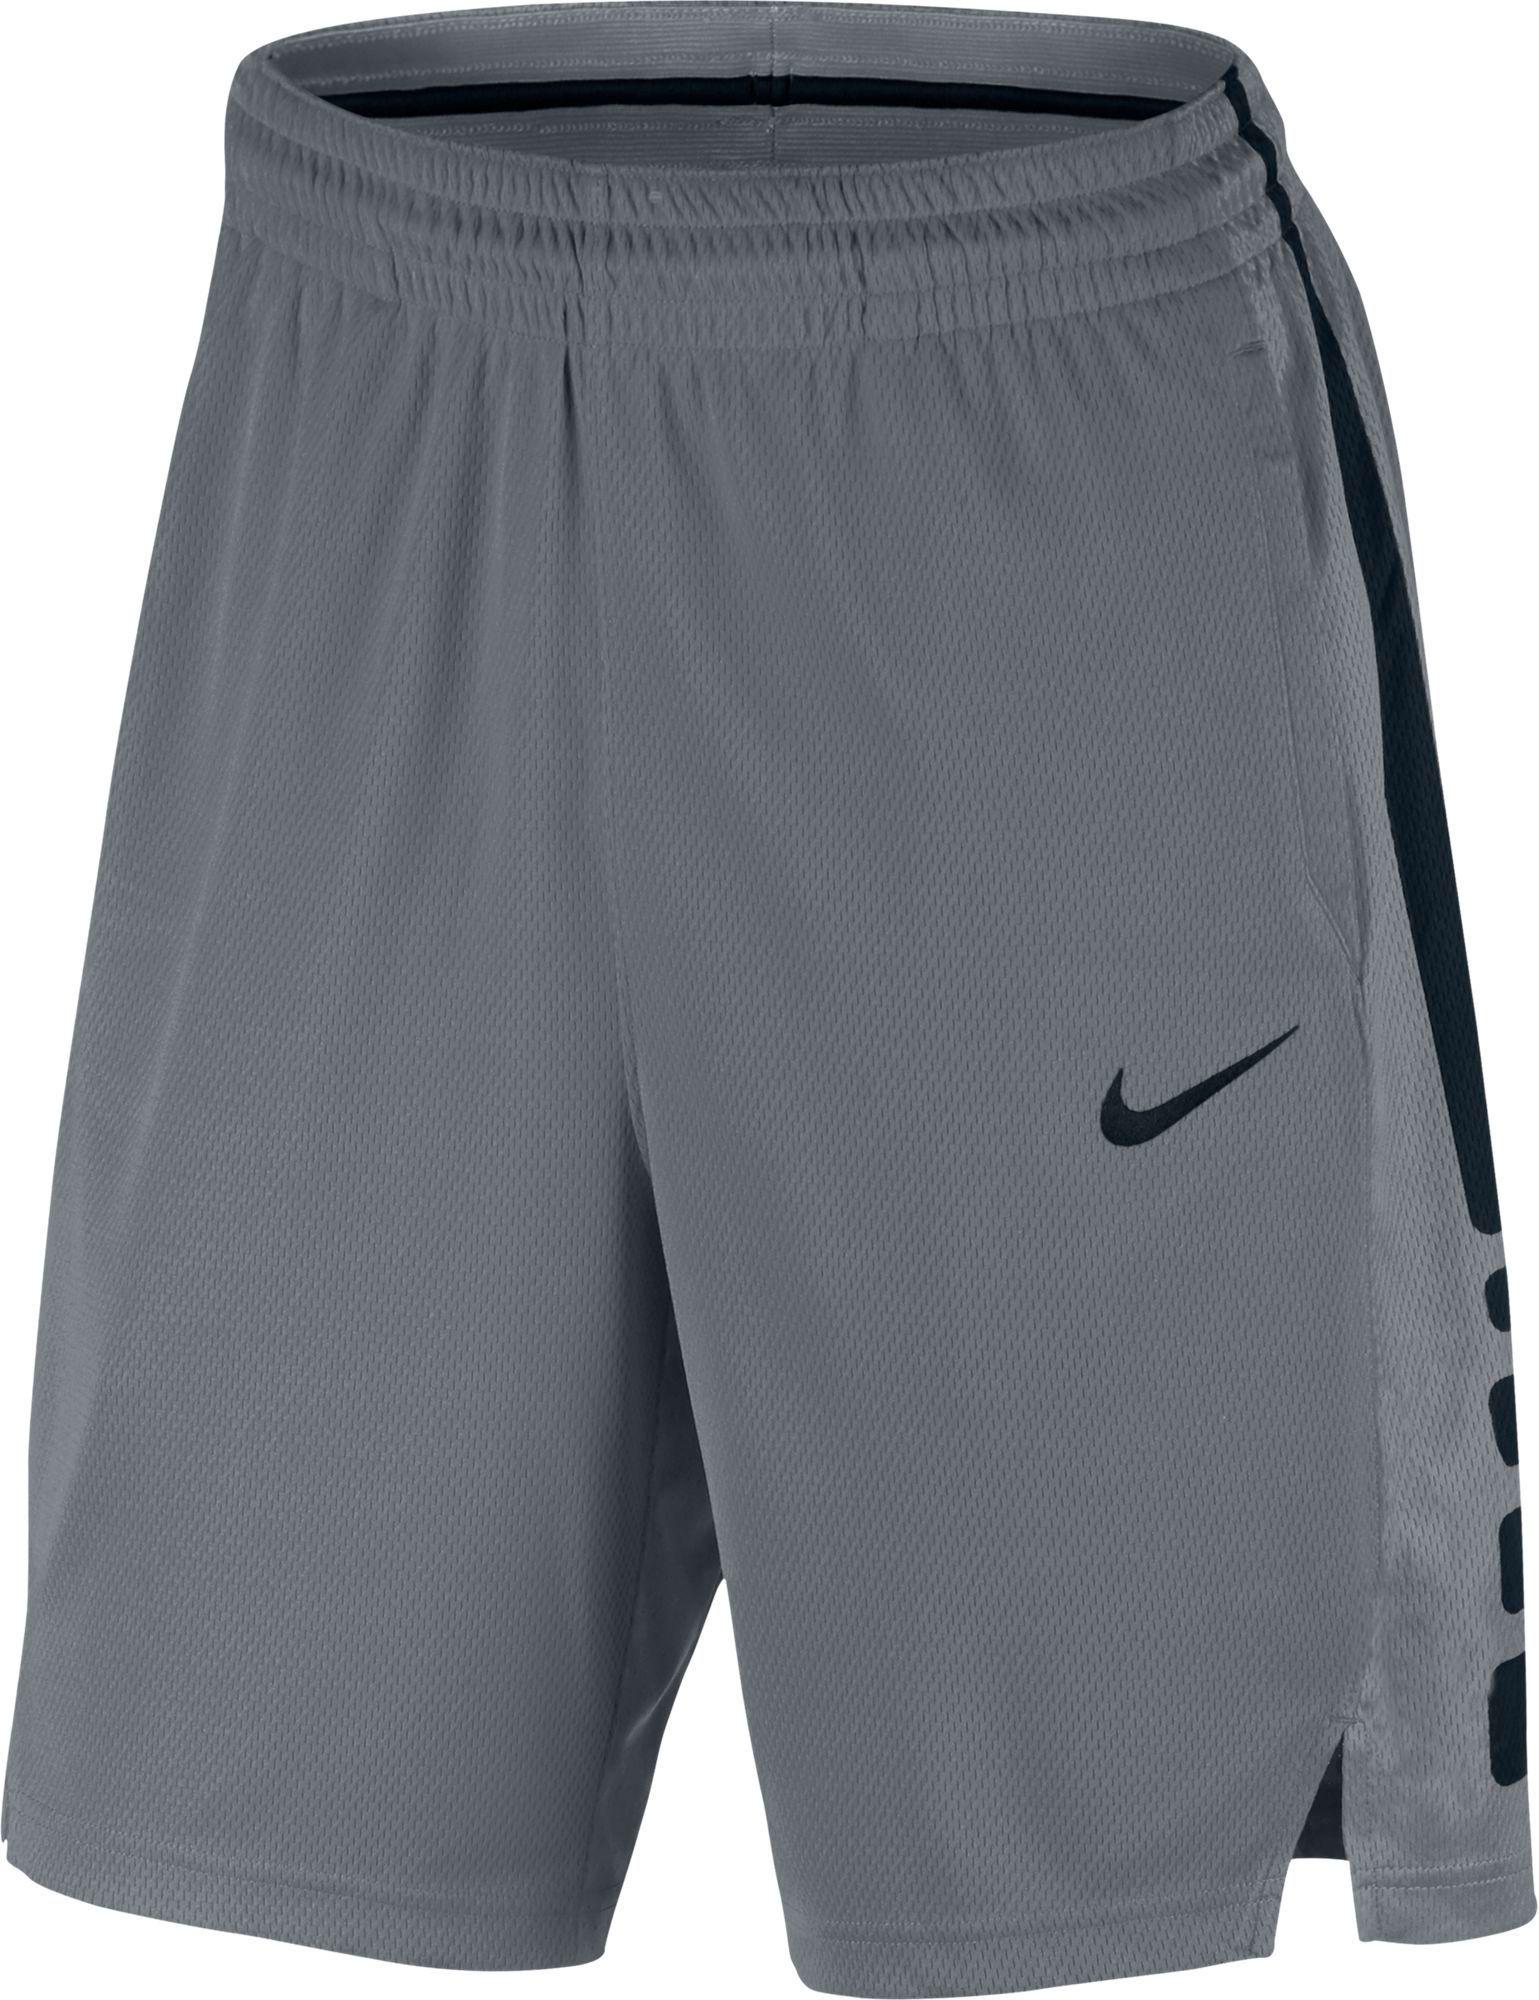 Lyst - Nike Men's Elite Dri-fit Basketball Shorts in Gray for Men ...